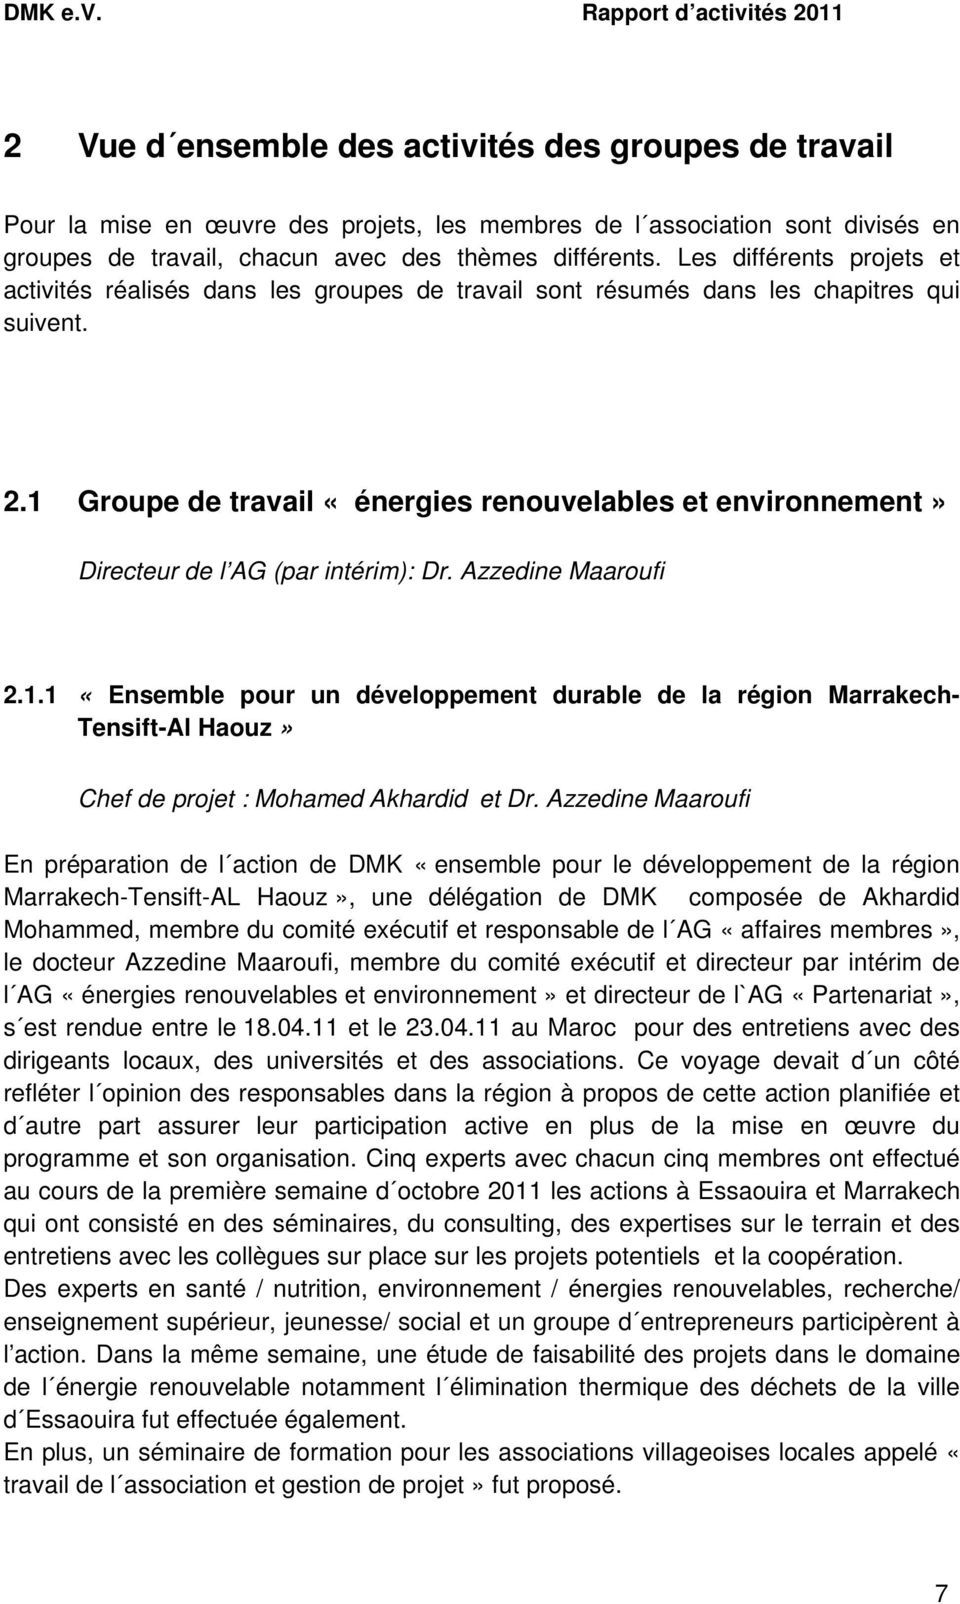 1 Groupe de travail «énergies renouvelables et environnement» Directeur de l AG (par intérim): Dr. Azzedine Maaroufi 2.1.1 «Ensemble pour un développement durable de la région Marrakech- Tensift-Al Haouz» Chef de projet : Mohamed Akhardid et Dr.